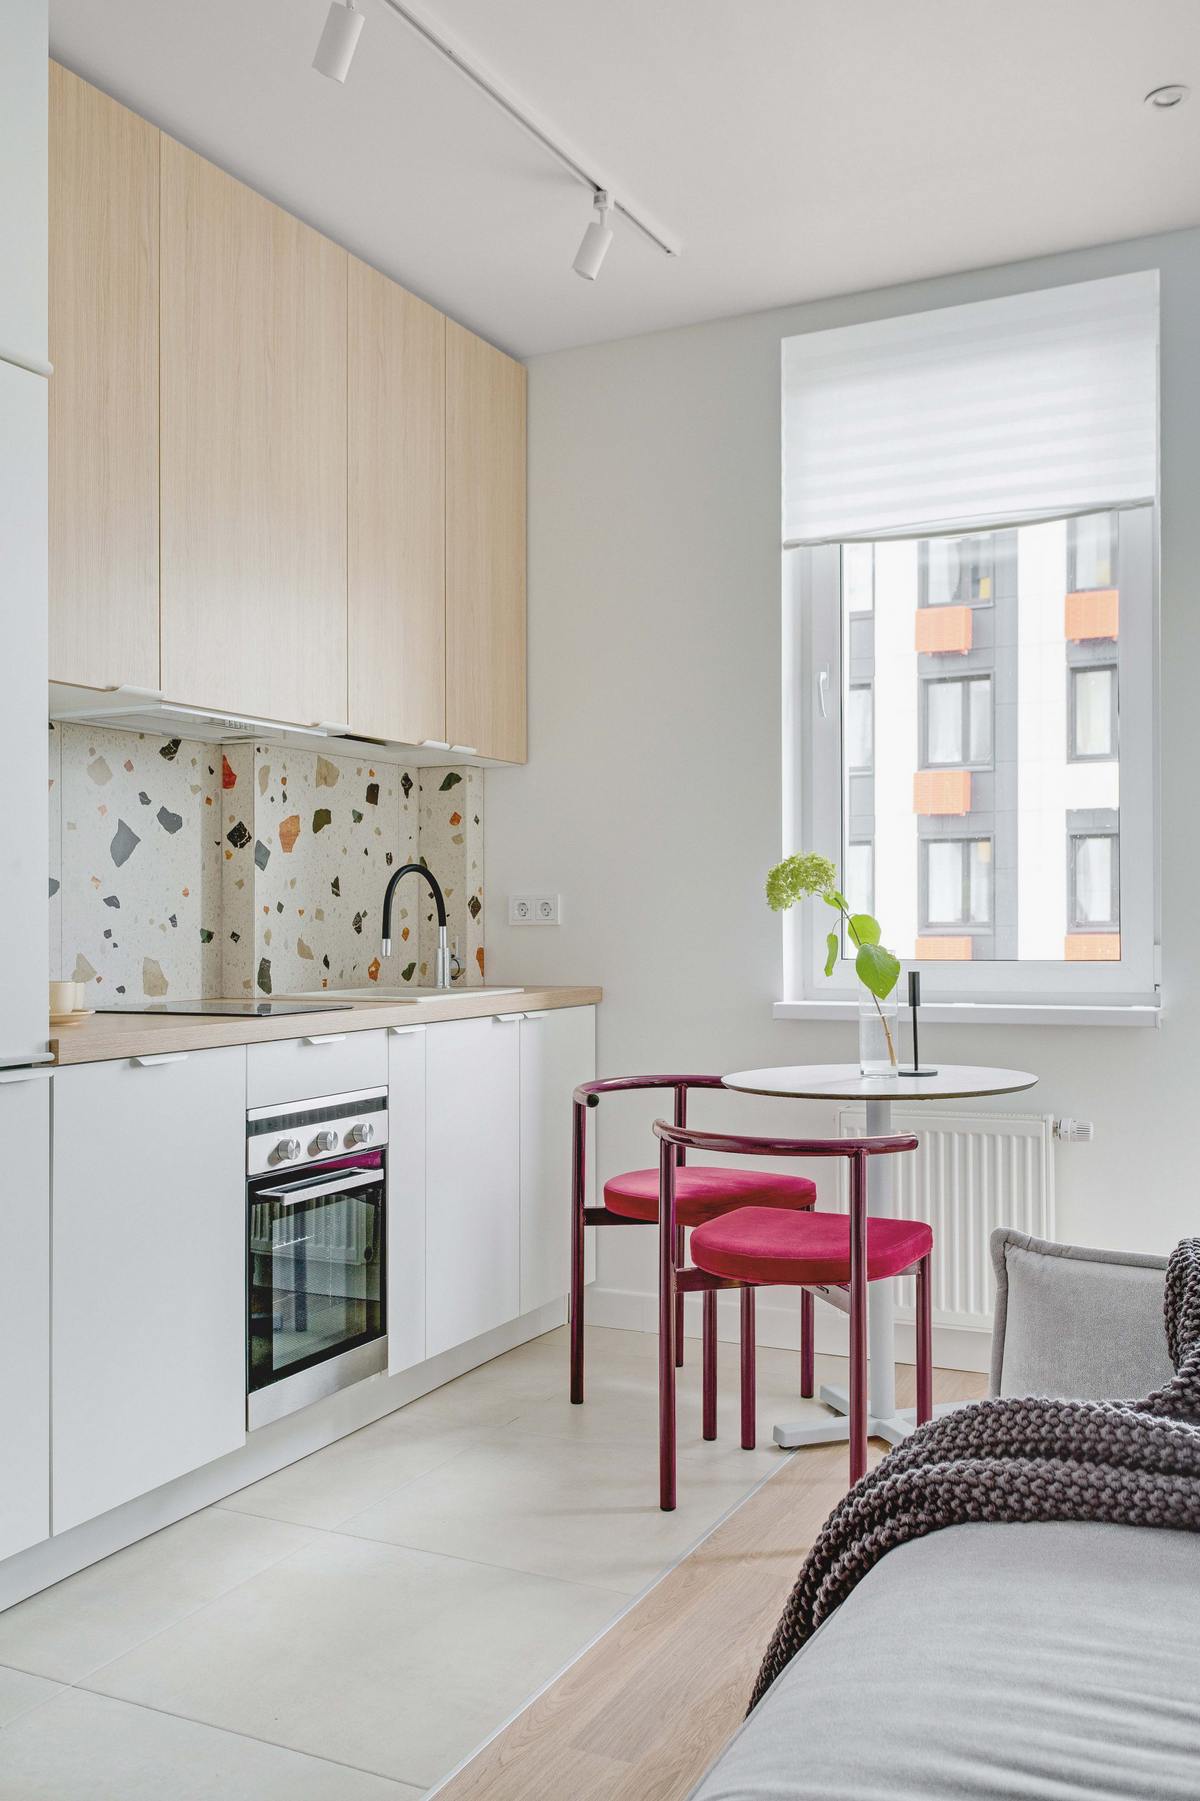 Phòng bếp thiết kế đối diện phòng khách với kiểu bếp chữ I nhỏ gọn, phân vùng với không gian tiếp khách bằng gạch lát sàn cỡ lớn cho cảm giác sạch sẽ, dễ vệ sinh.